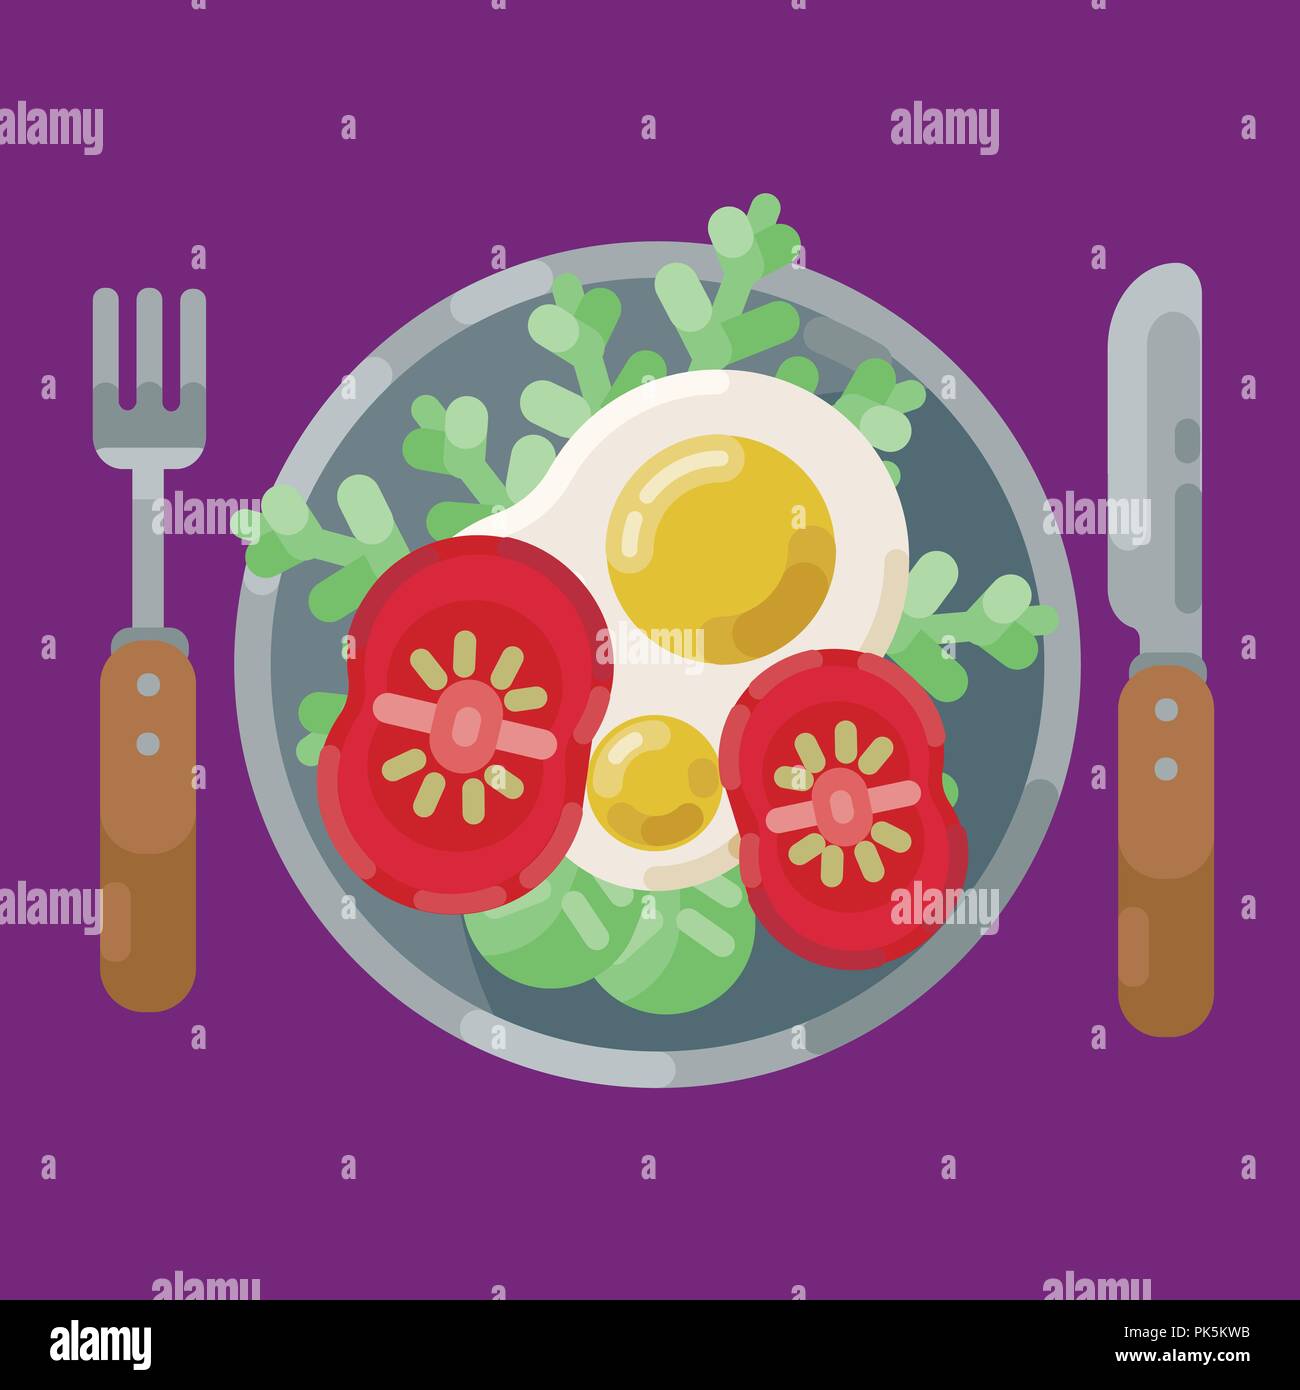 Ein herzhaftes Frühstück mit Spiegelei und frischem Gemüse. Vector Illustration. Das Essen auf dem Teller ist eine Ansicht von oben. Frühstück serviert. Stock Vektor